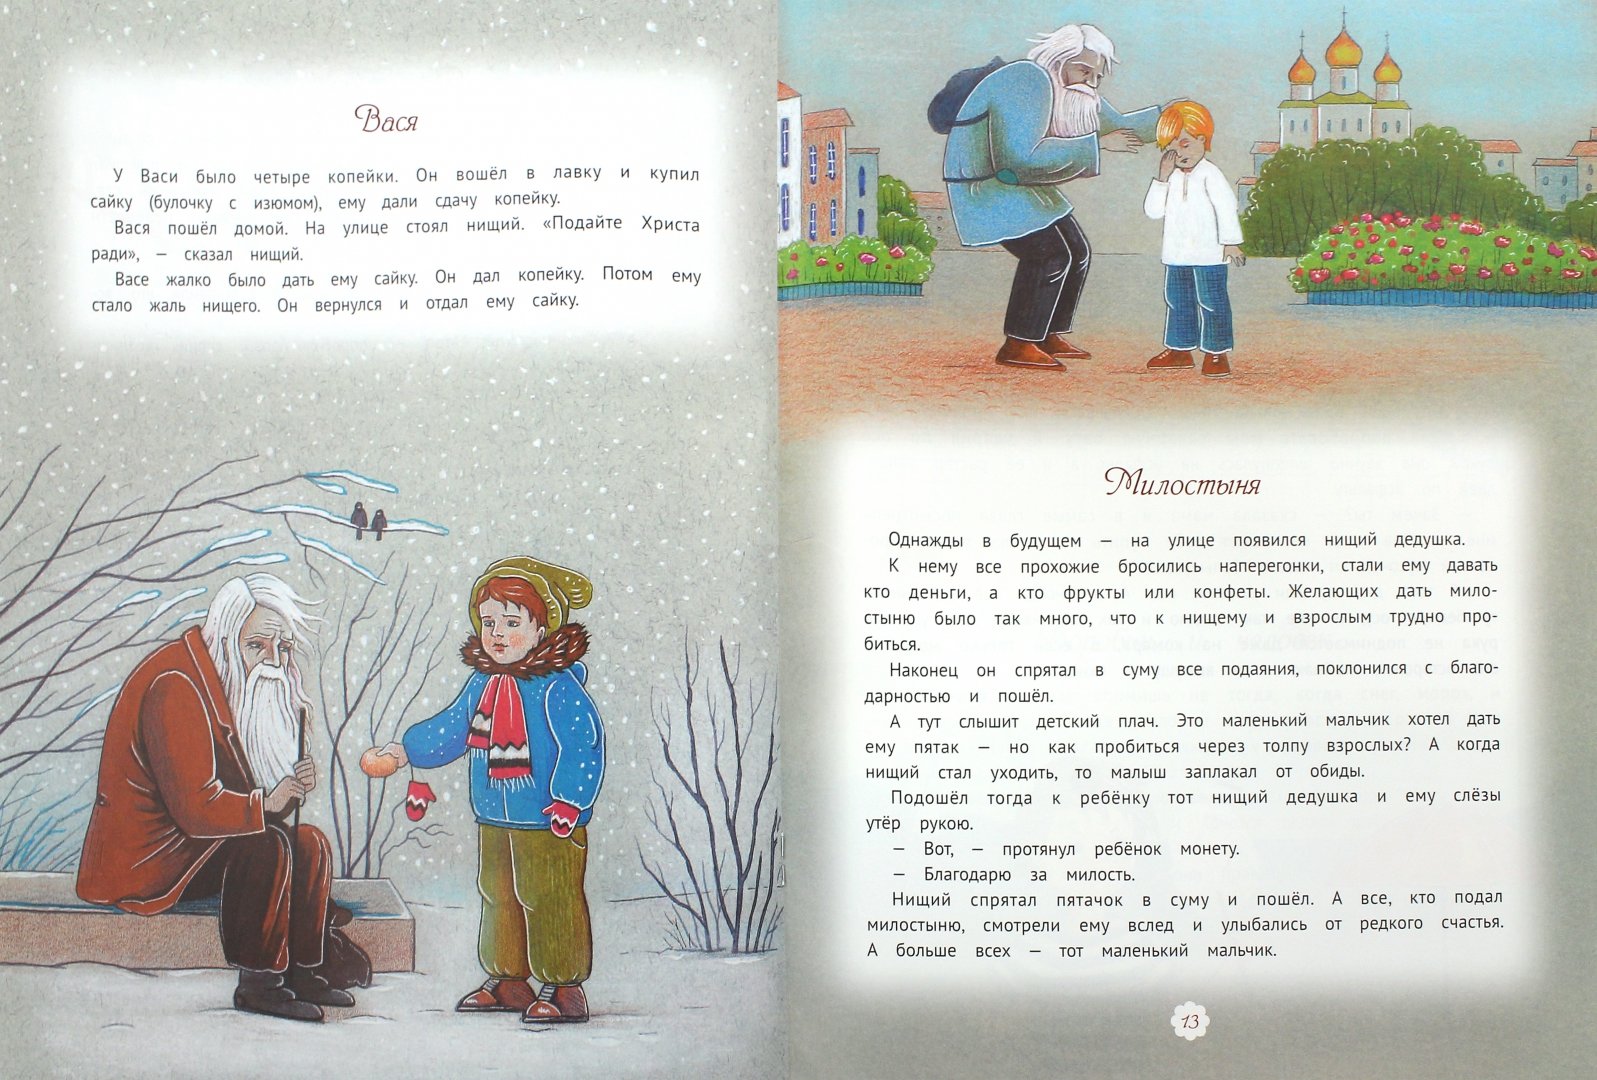 Иллюстрация 1 из 5 для Лизина грядка - Брейэр, Толстой, Лукашевич | Лабиринт - книги. Источник: Лабиринт